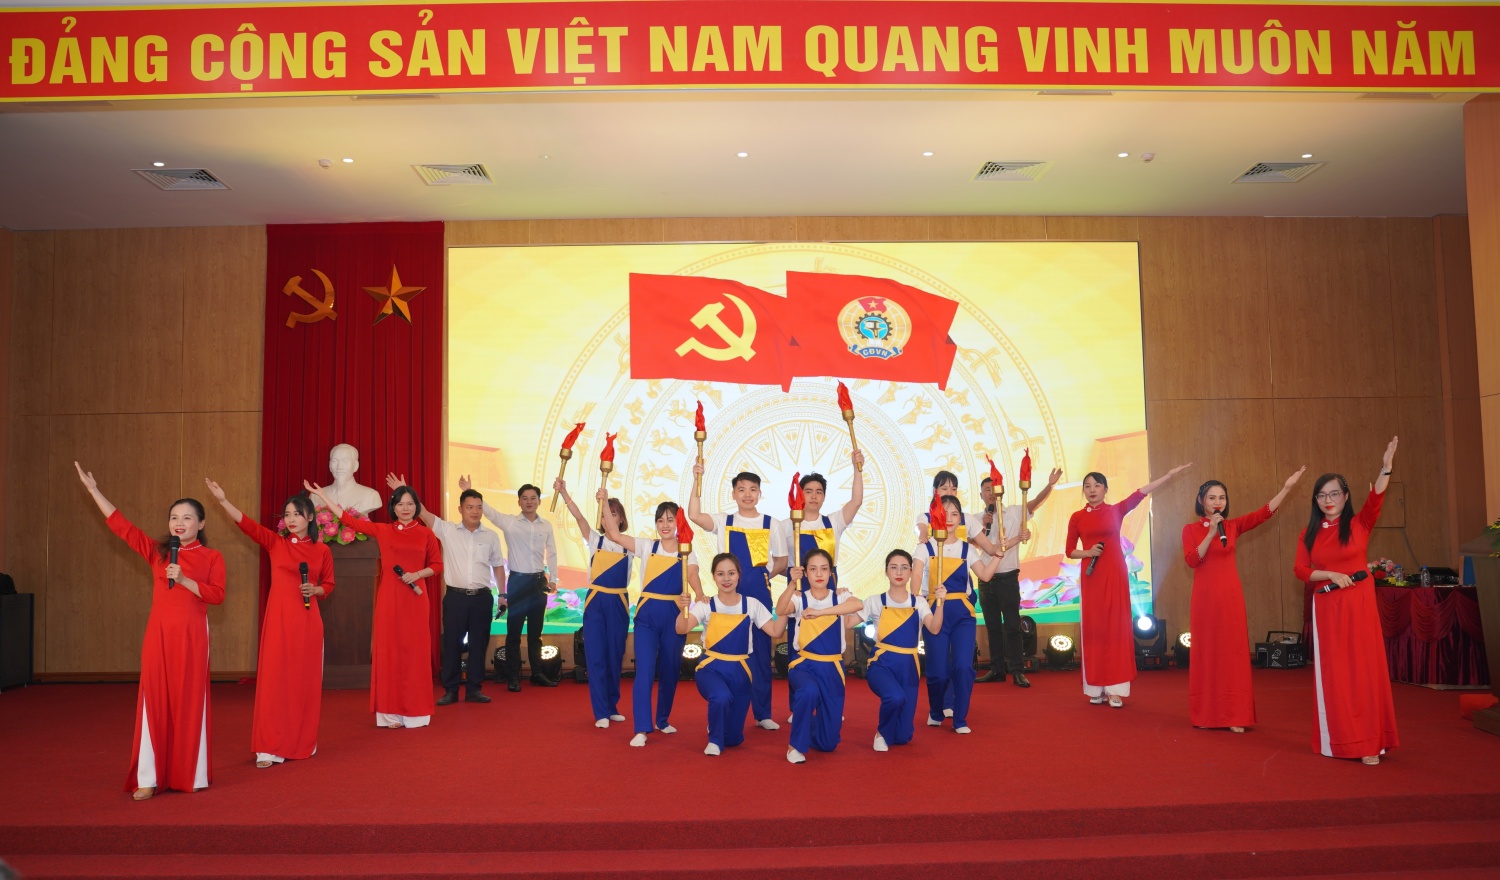 Công đoàn Nhà máy Nhiệt điện Thái Bình 2 tổ chức thành công Đại hội lần thứ nhất, nhiệm kỳ 2024 - 2028